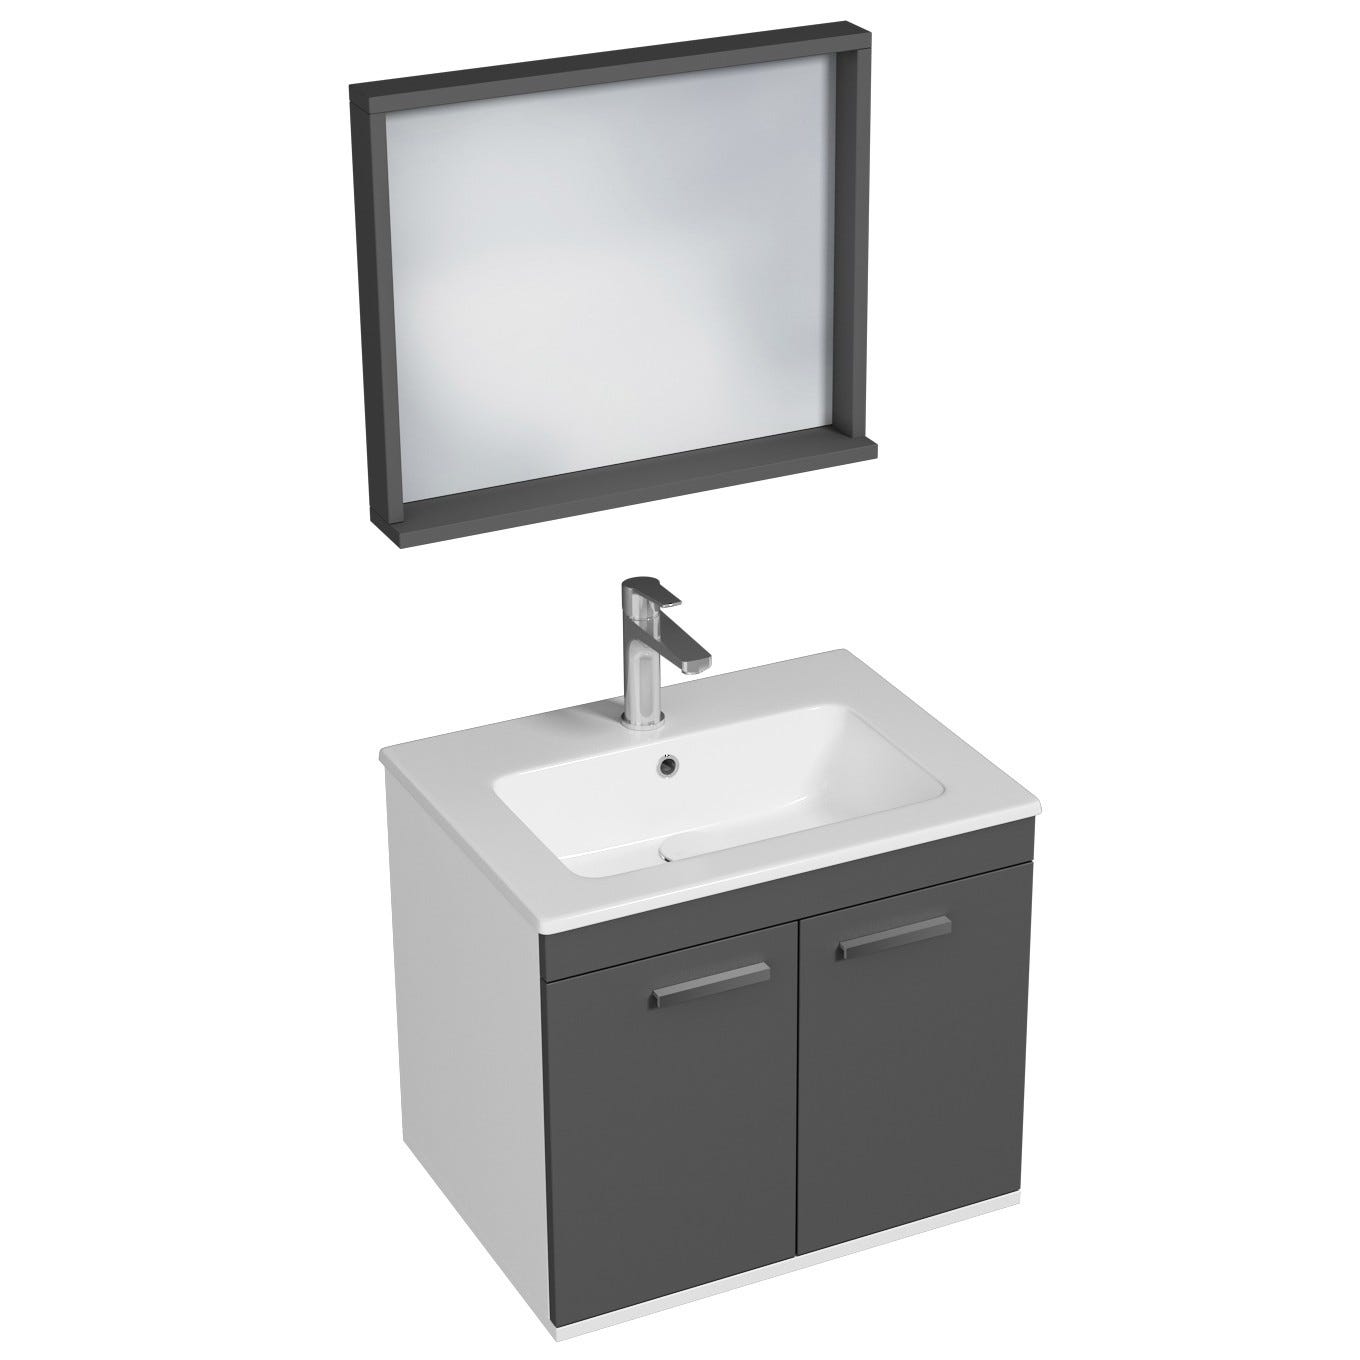 RUBITE Meuble salle de bain simple vasque 2 portes gris anthracite largeur 60 cm + miroir cadre 0